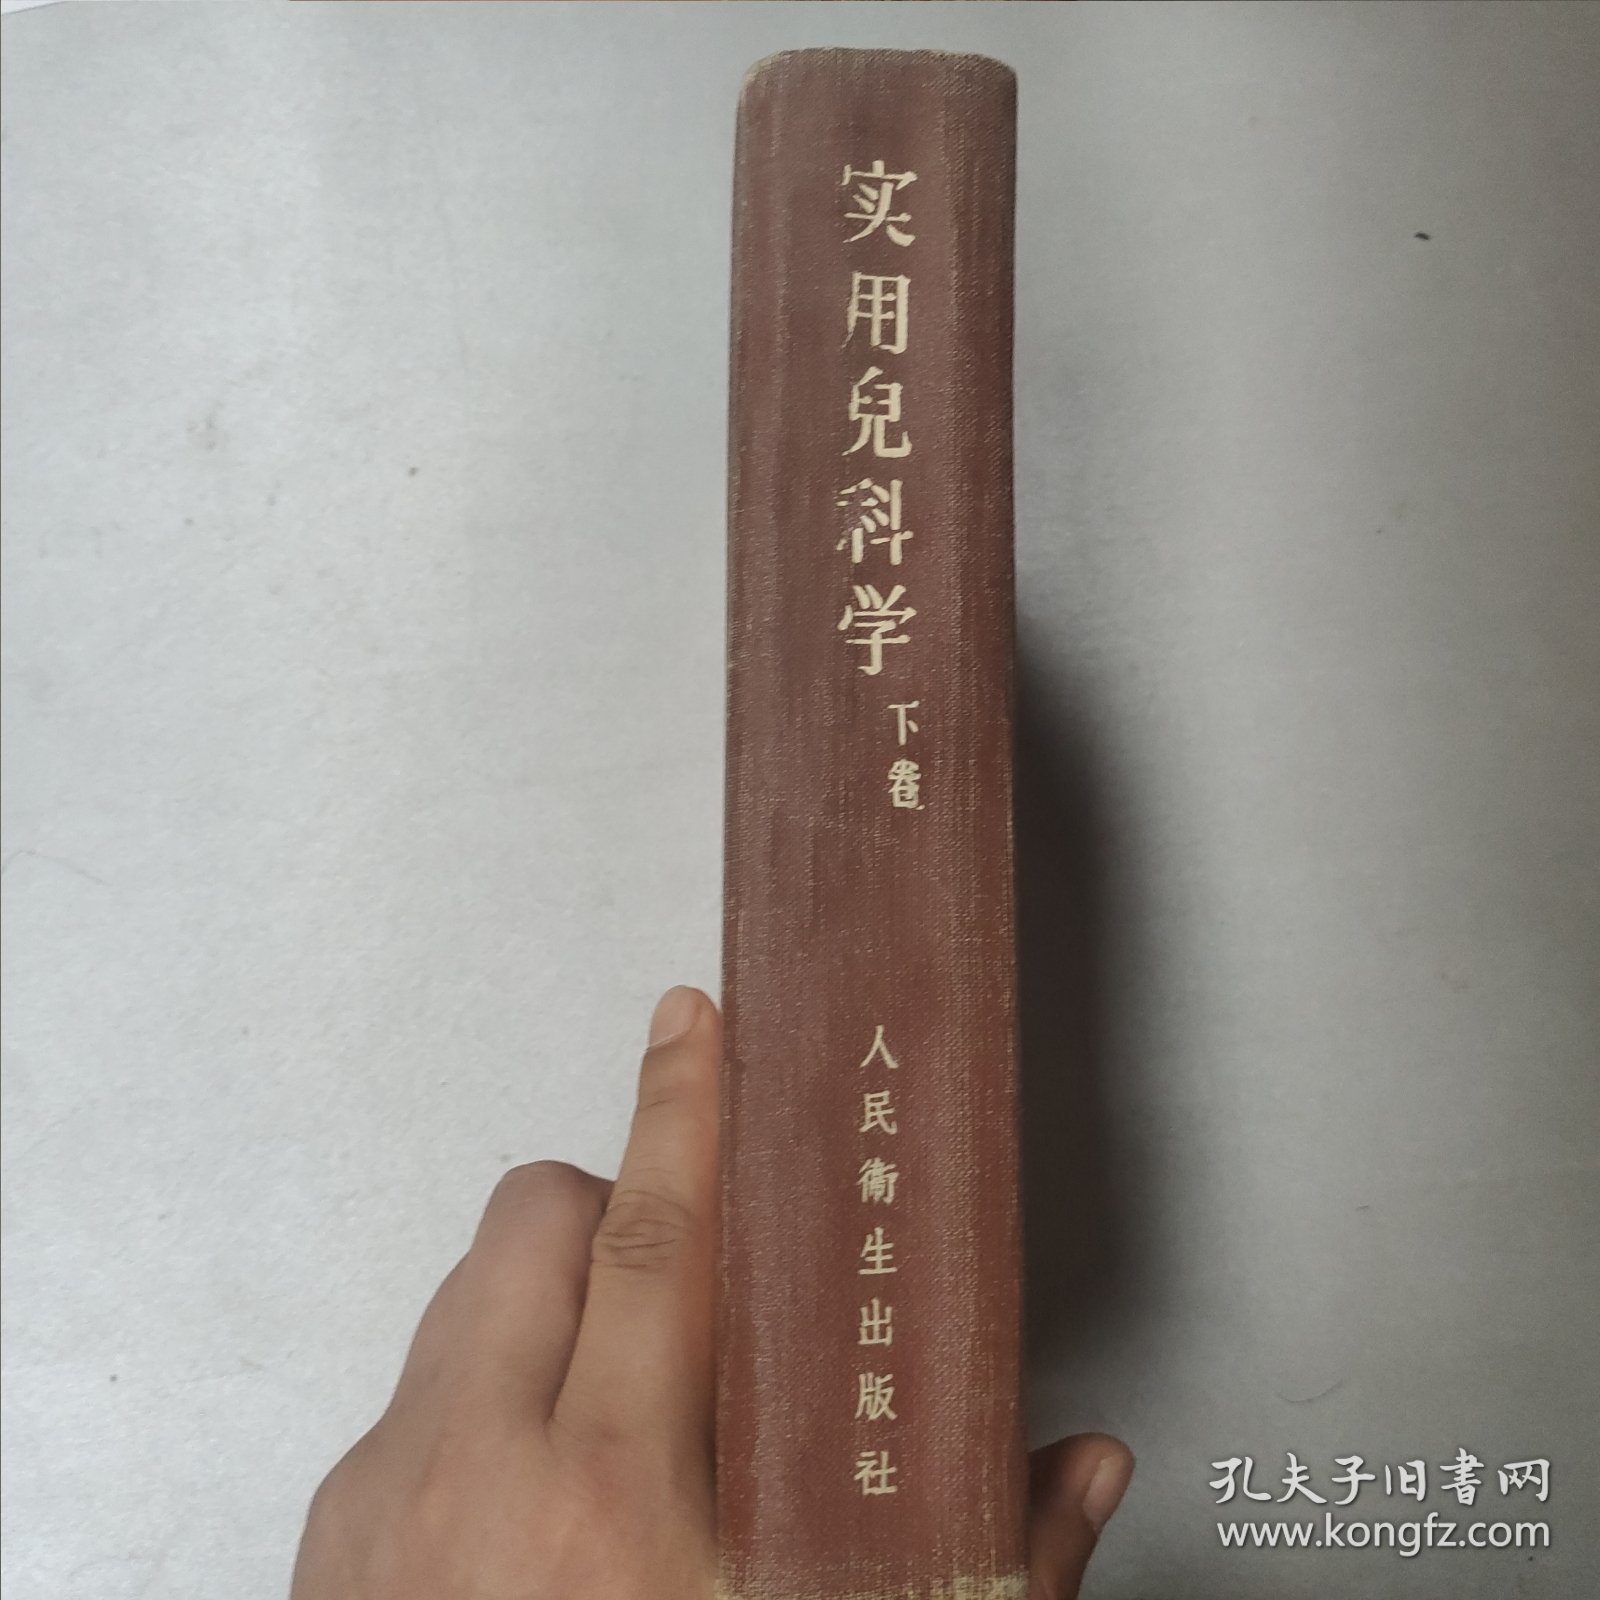 W 1960年北京 人民卫生出版社出版 诸福棠主编 《实用儿科学》 下卷 一厚册！！！